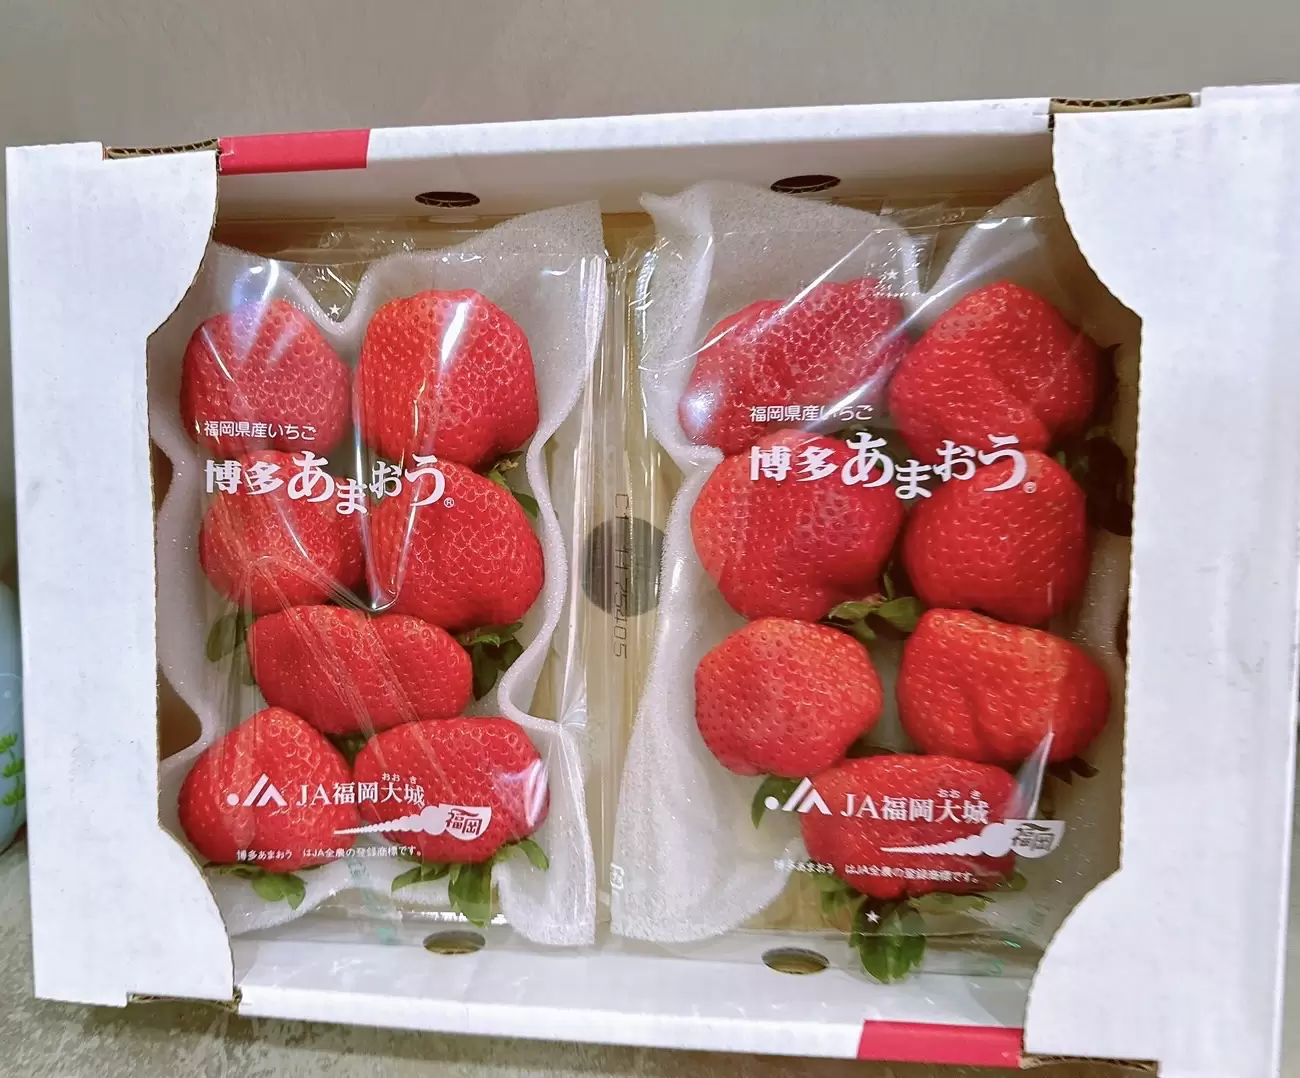 綠生活商城 - 【專業農】日本 福岡博多 甘王 草莓